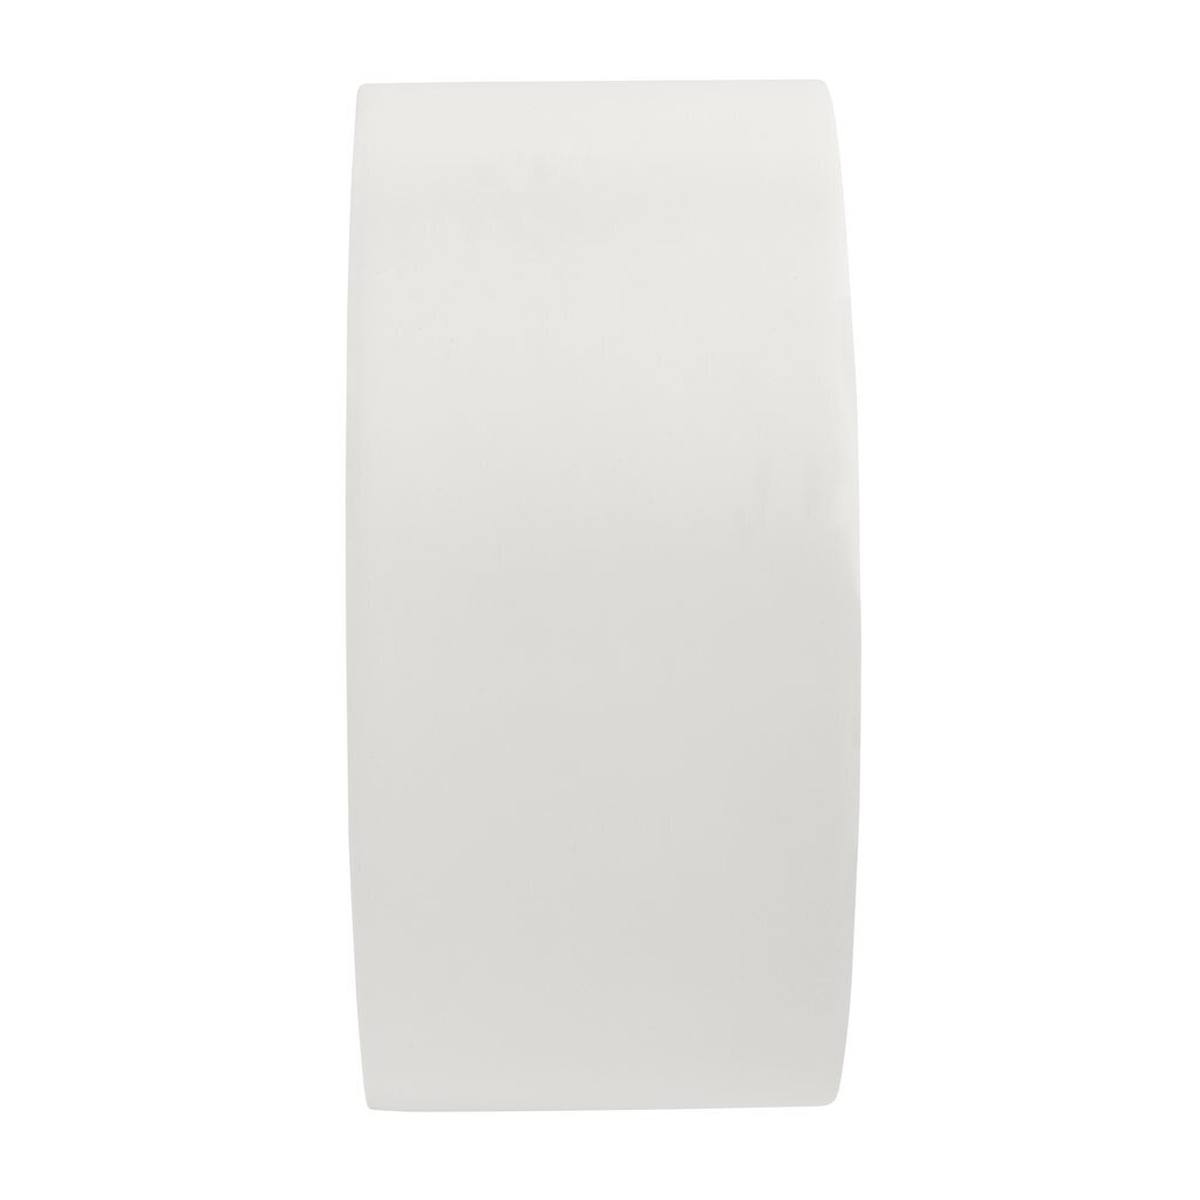 3M universele PVC kleefband 764, wit, 50 mm x 33 m, individueel verpakt in handige verpakking